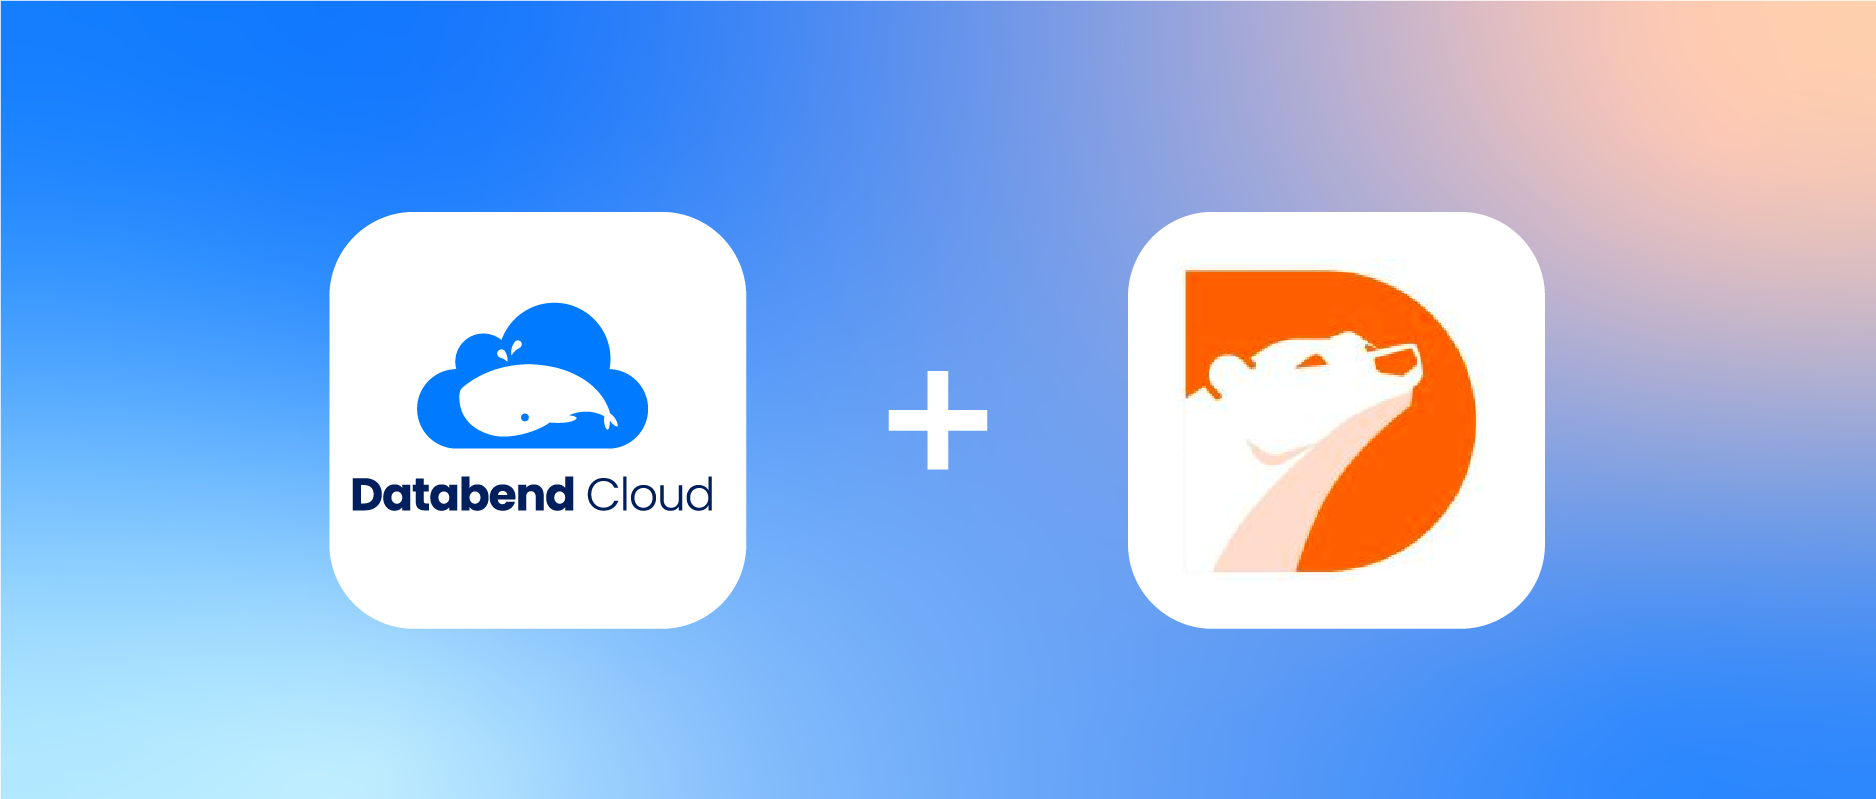 祝贺！Databend Cloud 和阿里云 PolarDB 达成认证